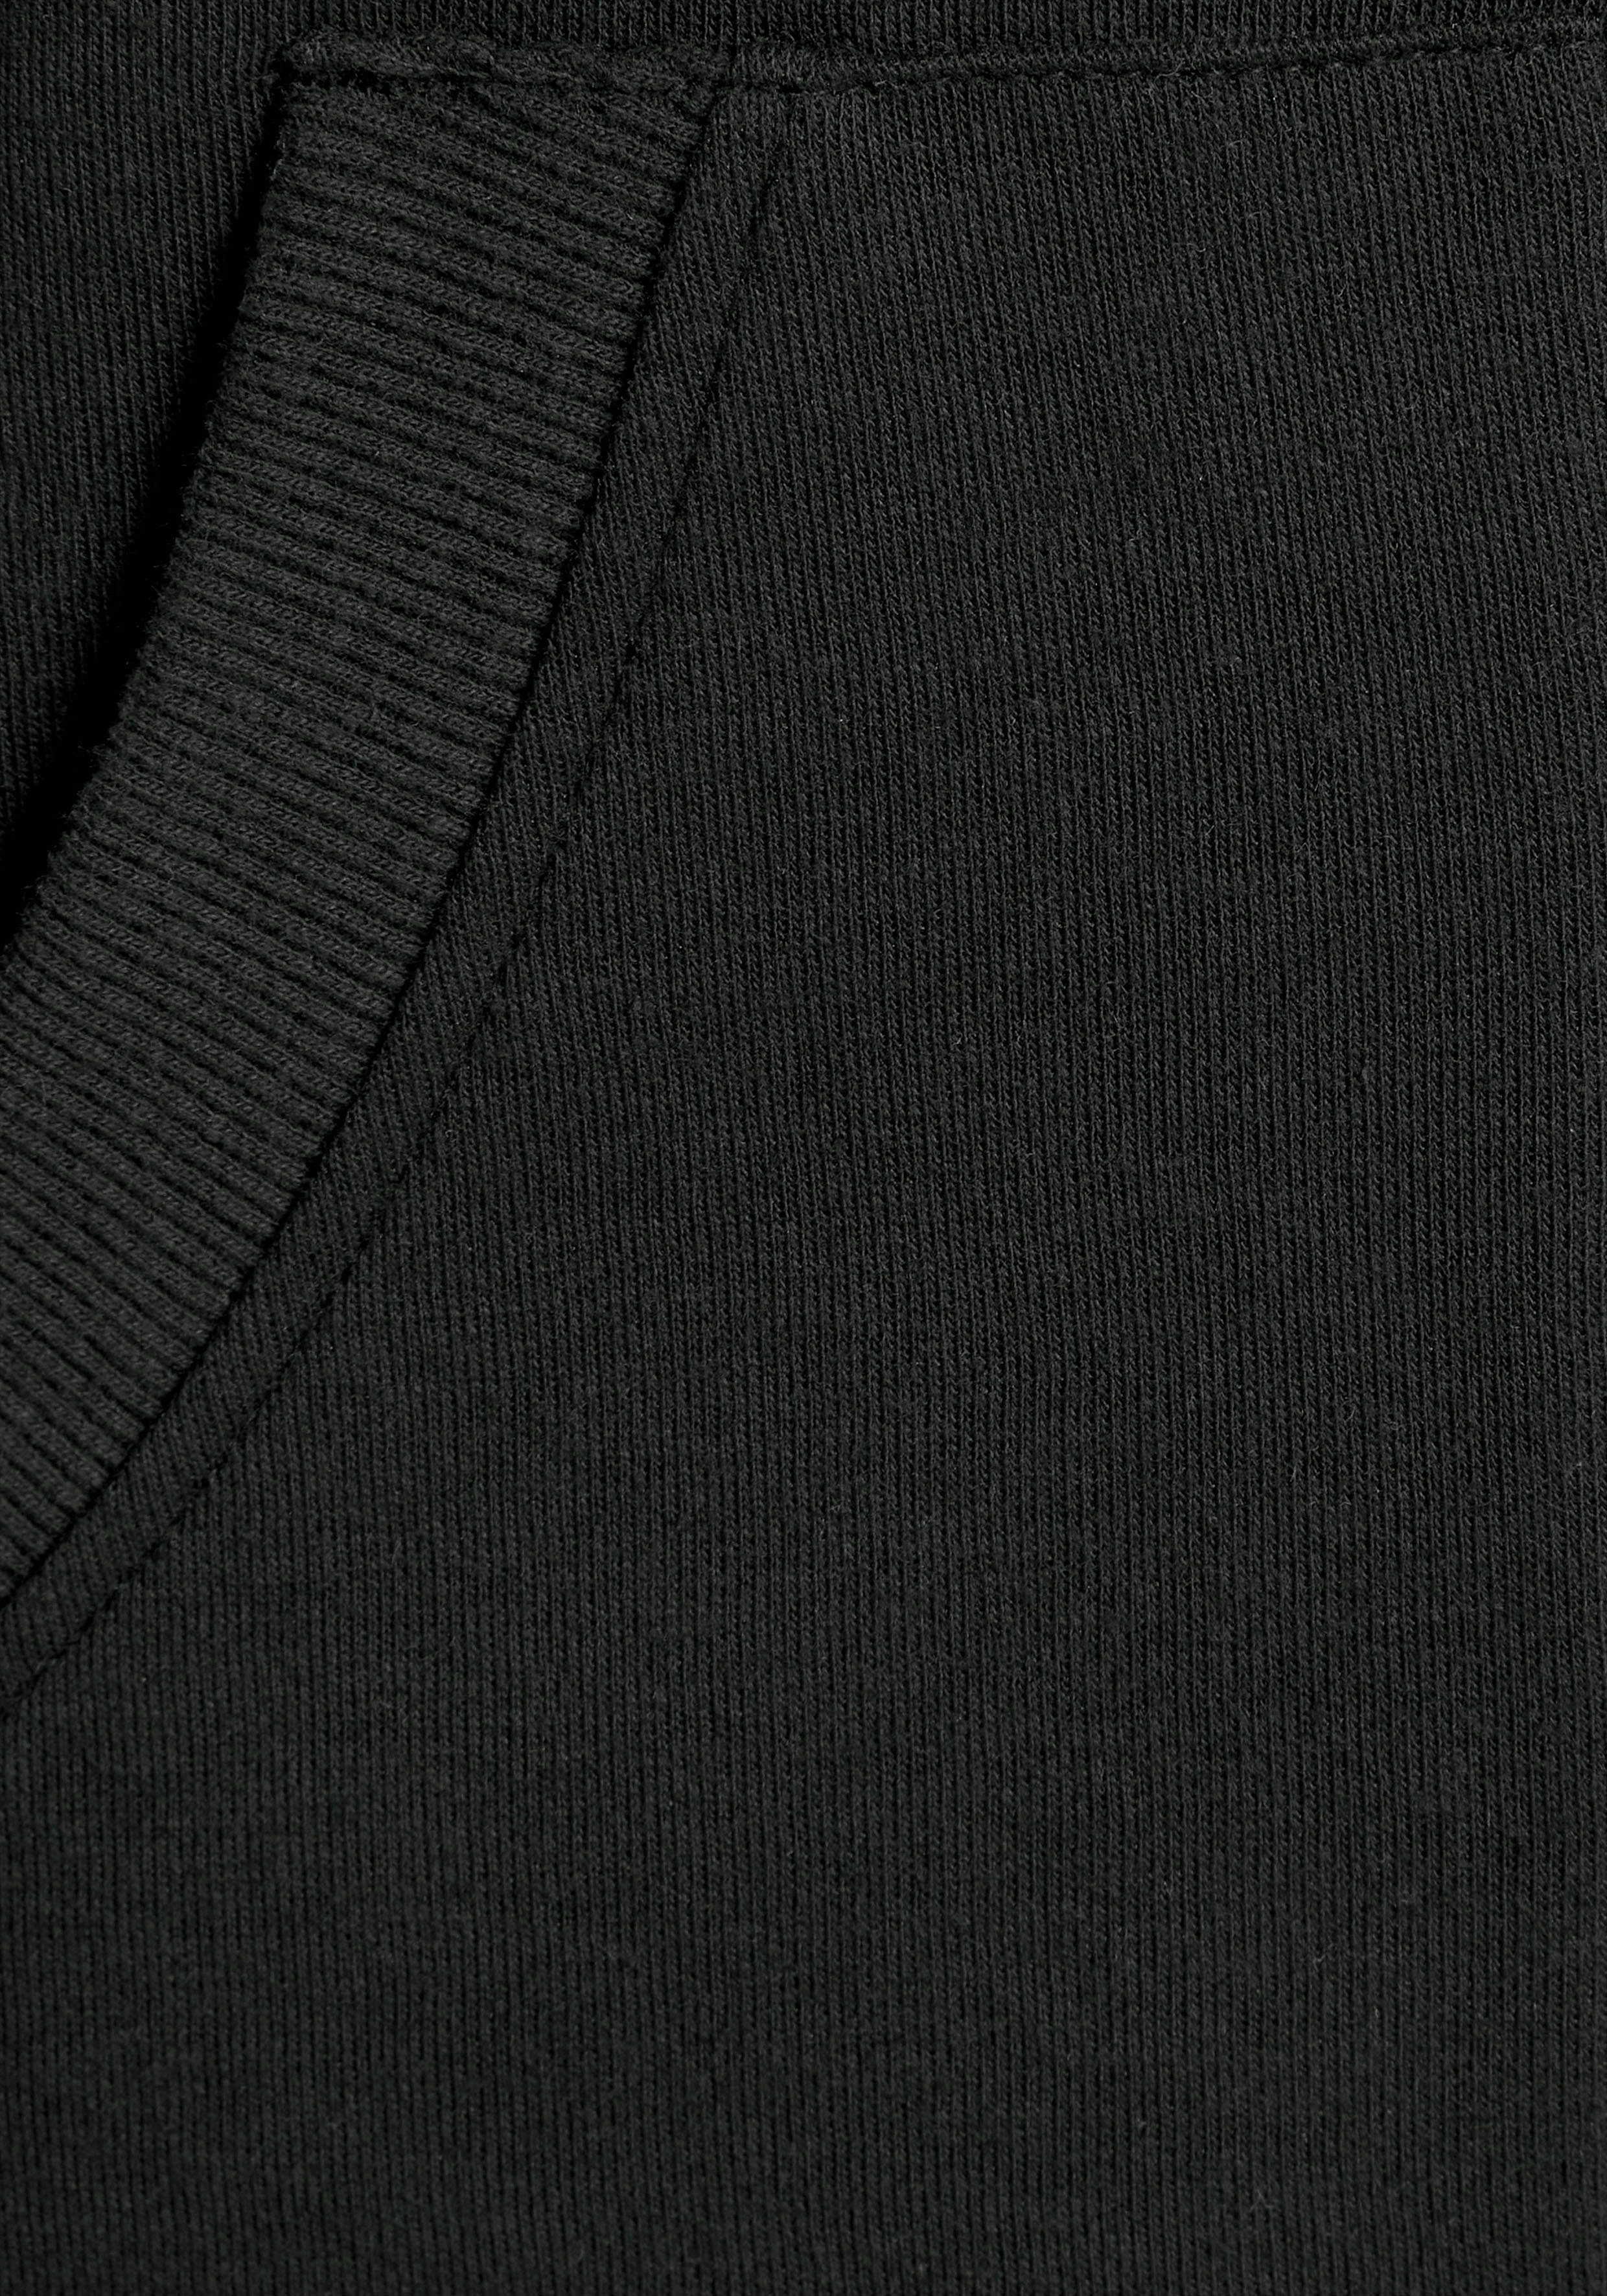 Logostickerei Kängurutasche, schwarz Bench. Kapuzensweatjacke Loungeanzug und Loungewear mit